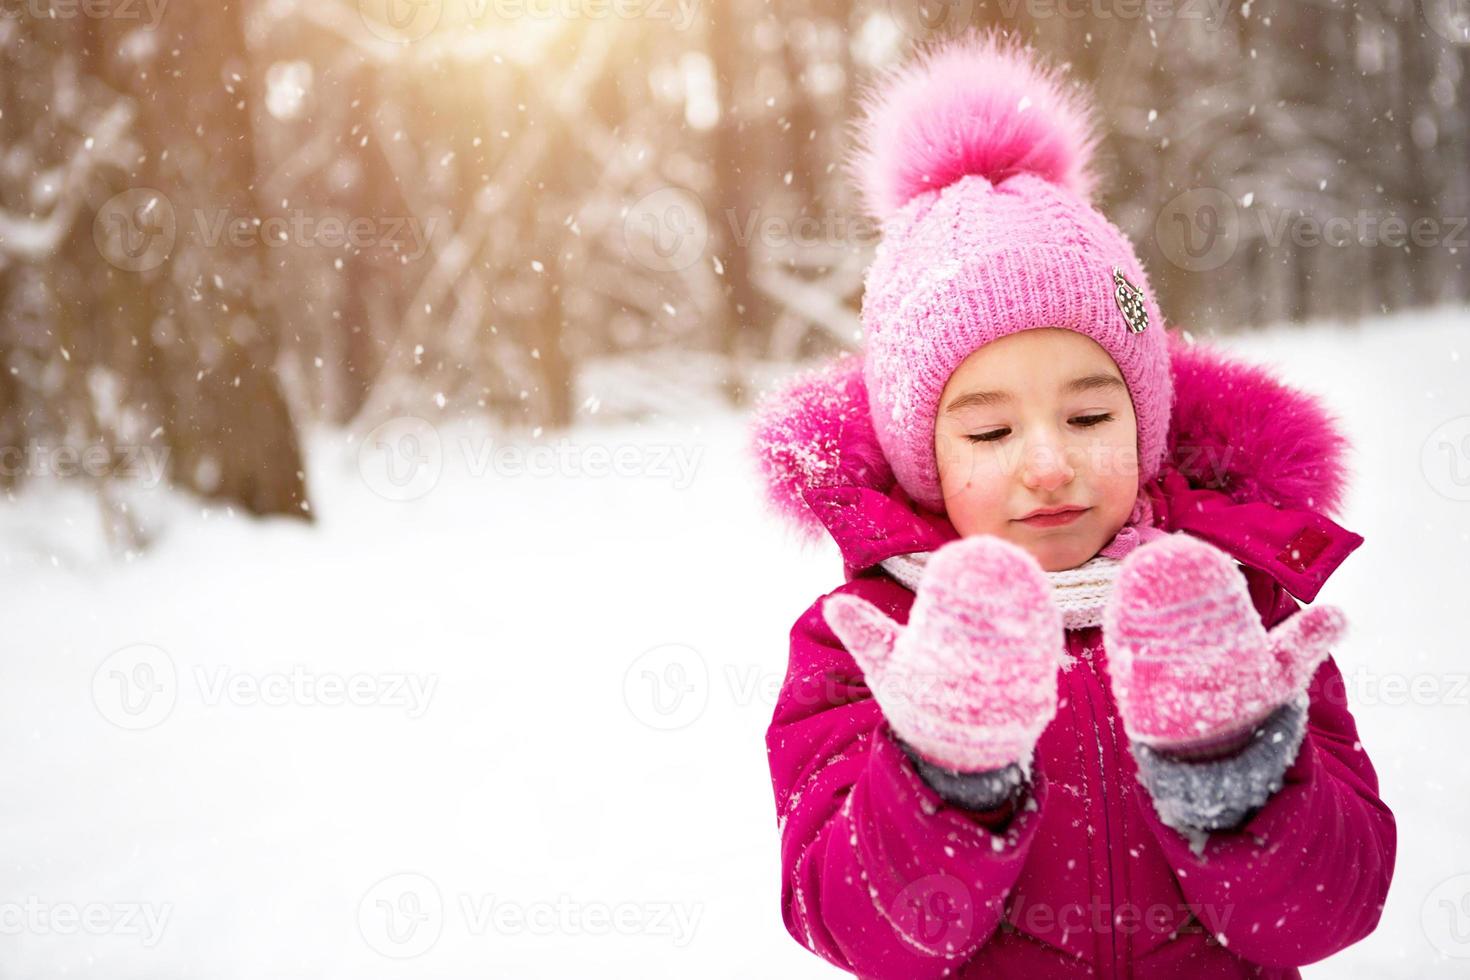 niña en el frío mira los de nieve sonríe. invierno, pasear al bebé al